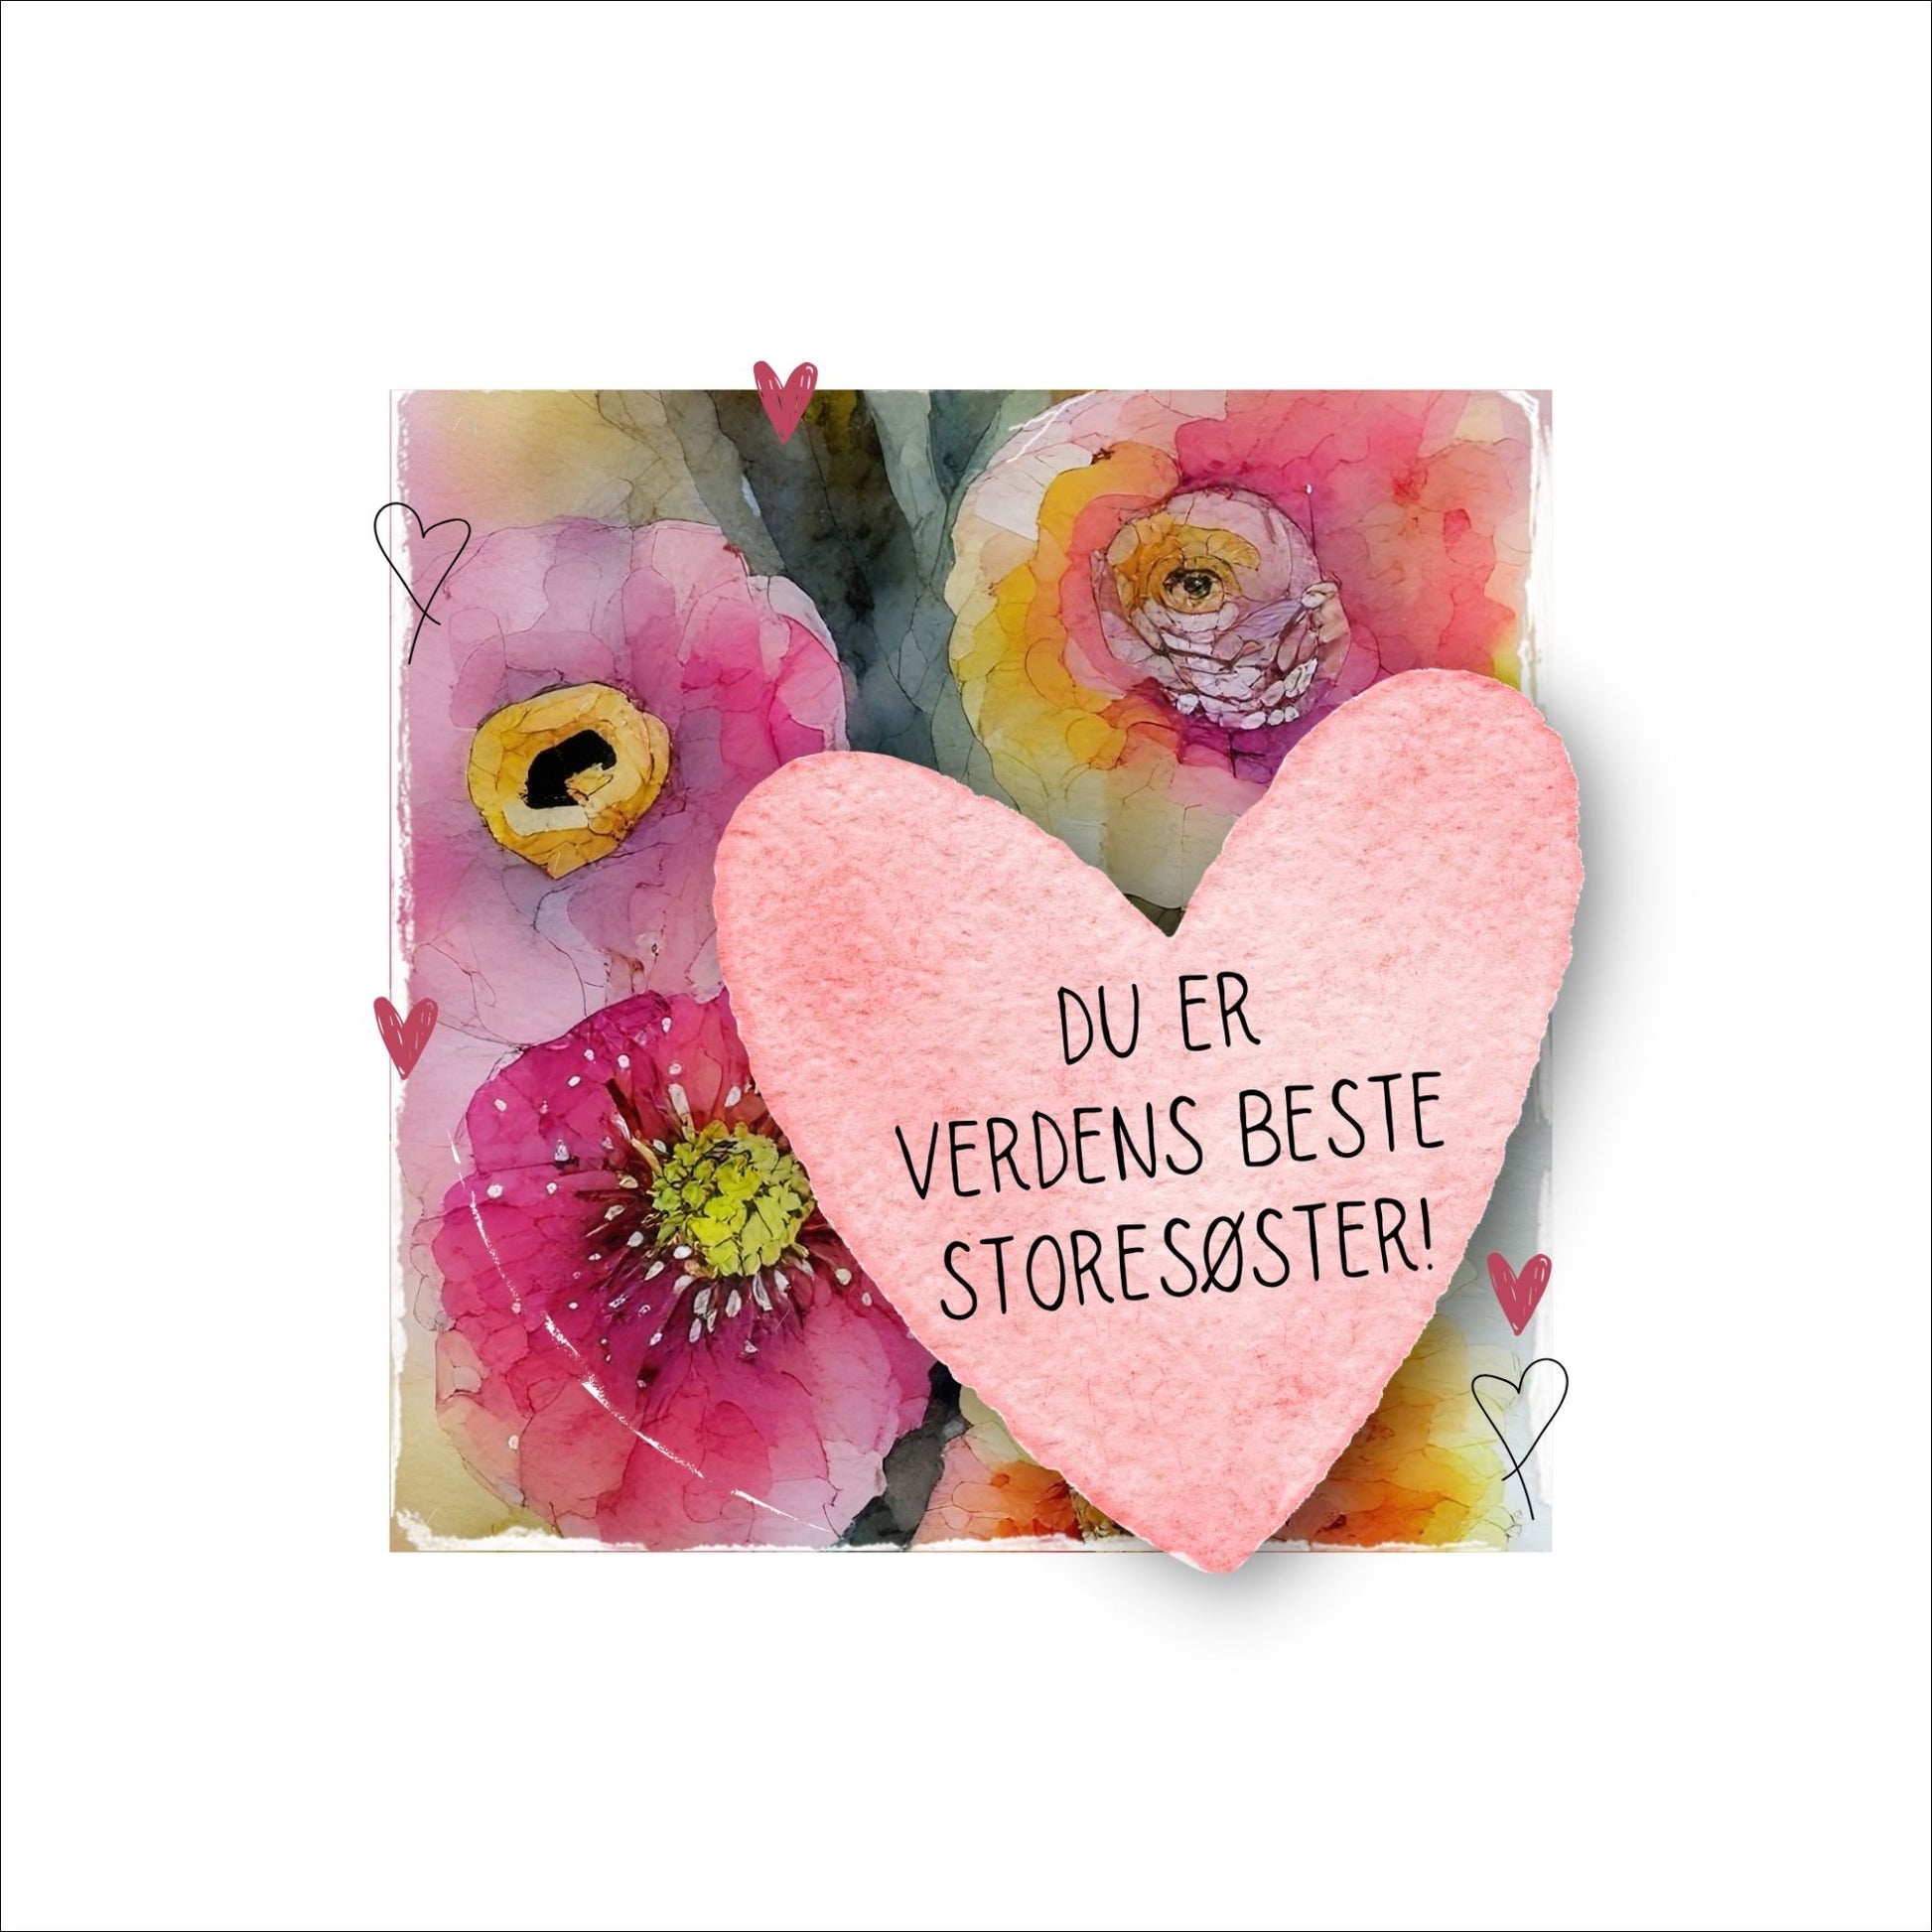 Grafisk plakat med et rosa hjerte påført tekst "Du er verdens beste lillesøster". Bagrunn i cerise og guloransje blomster. Kortet har en hvit kant rundt på 4 cm.